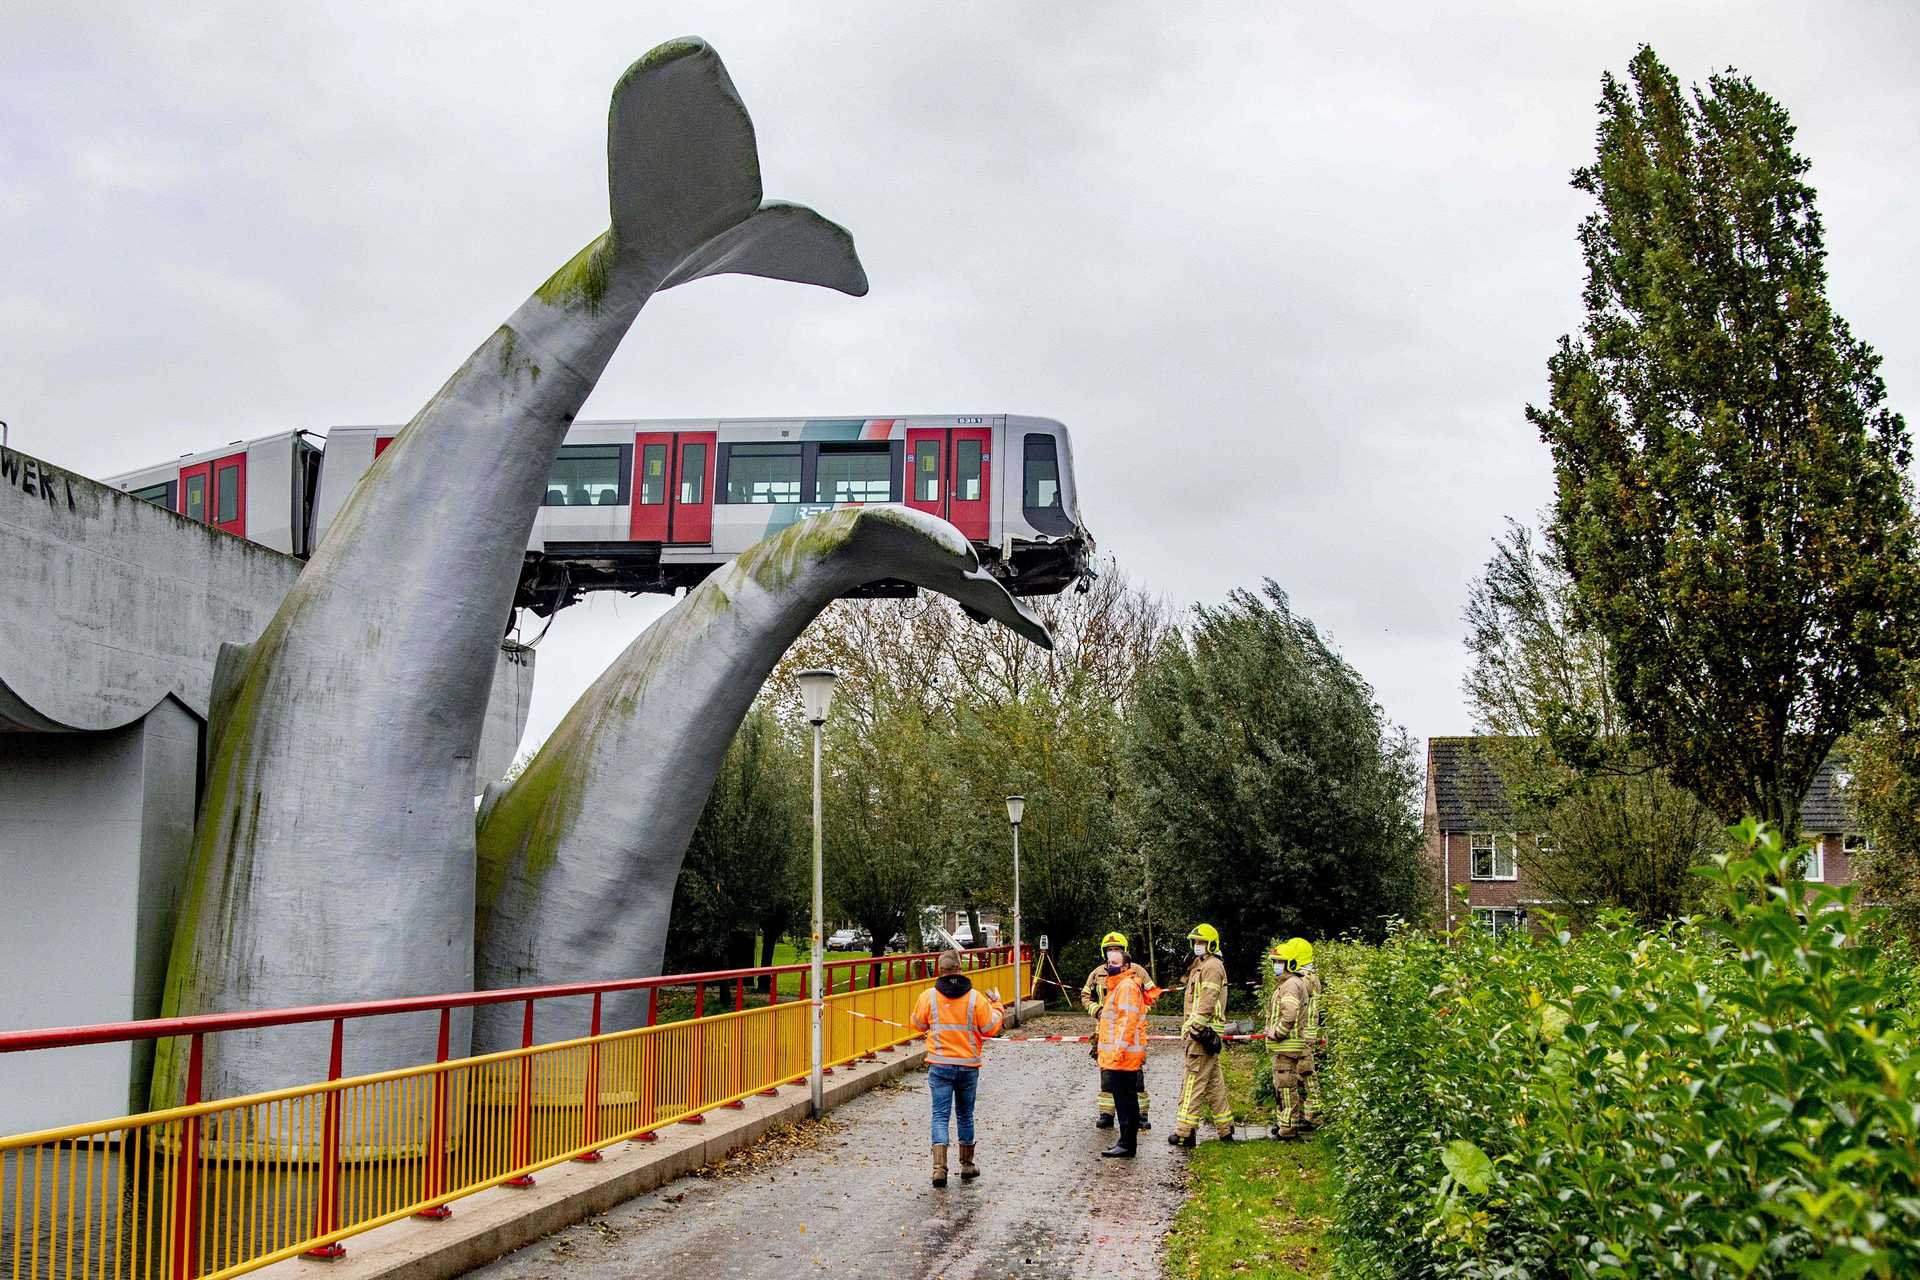 Metro descarrila na Holanda e não cai de ponte devido a escultura de cauda de baleia